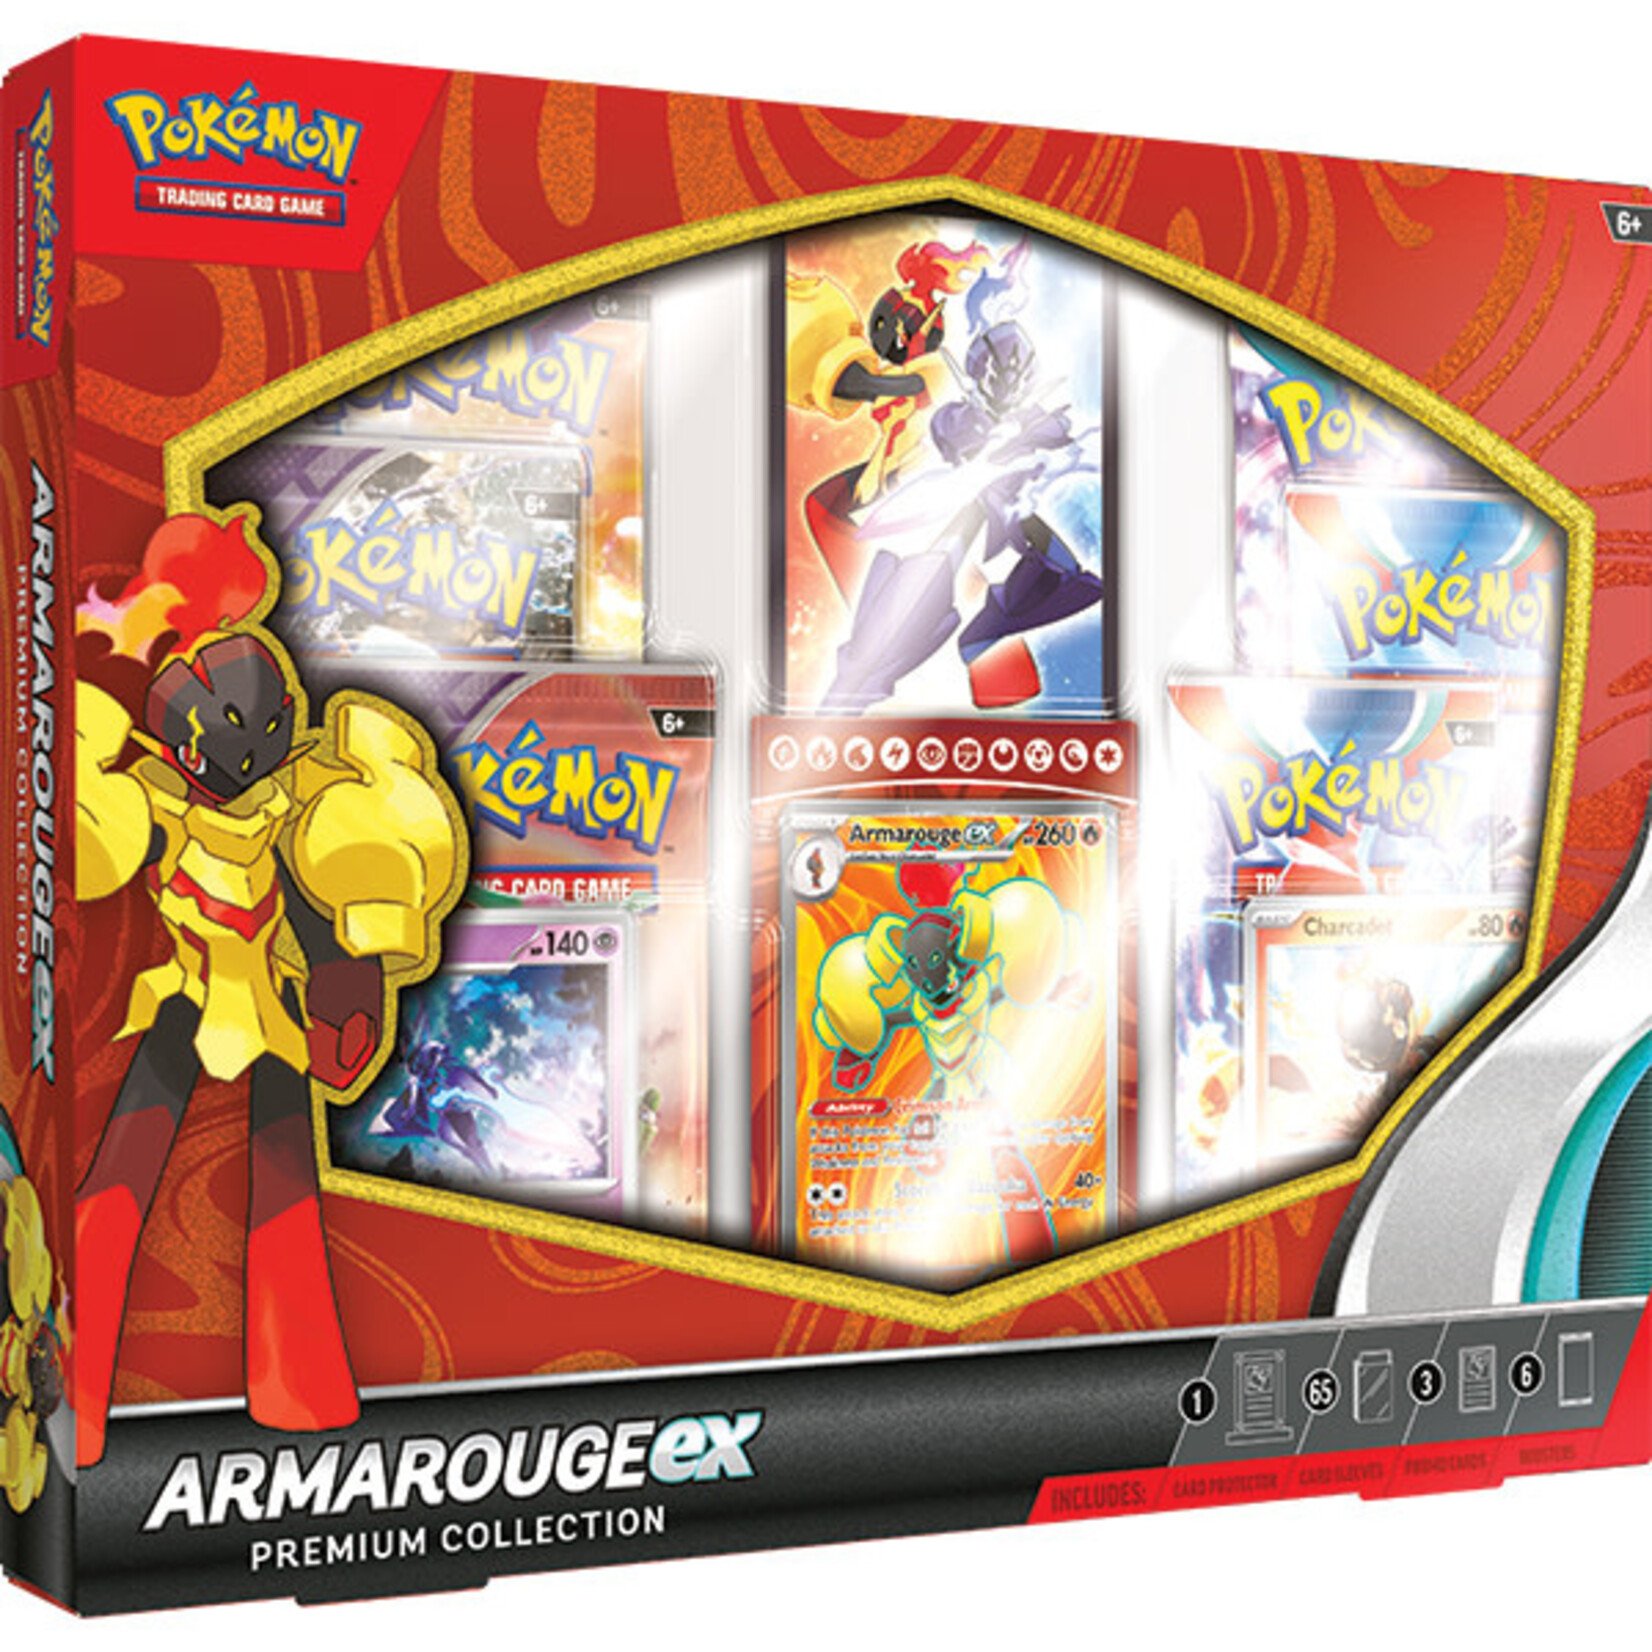 Pokémon Pokémon Trading Card Game: Armarouge ex Premium Collection